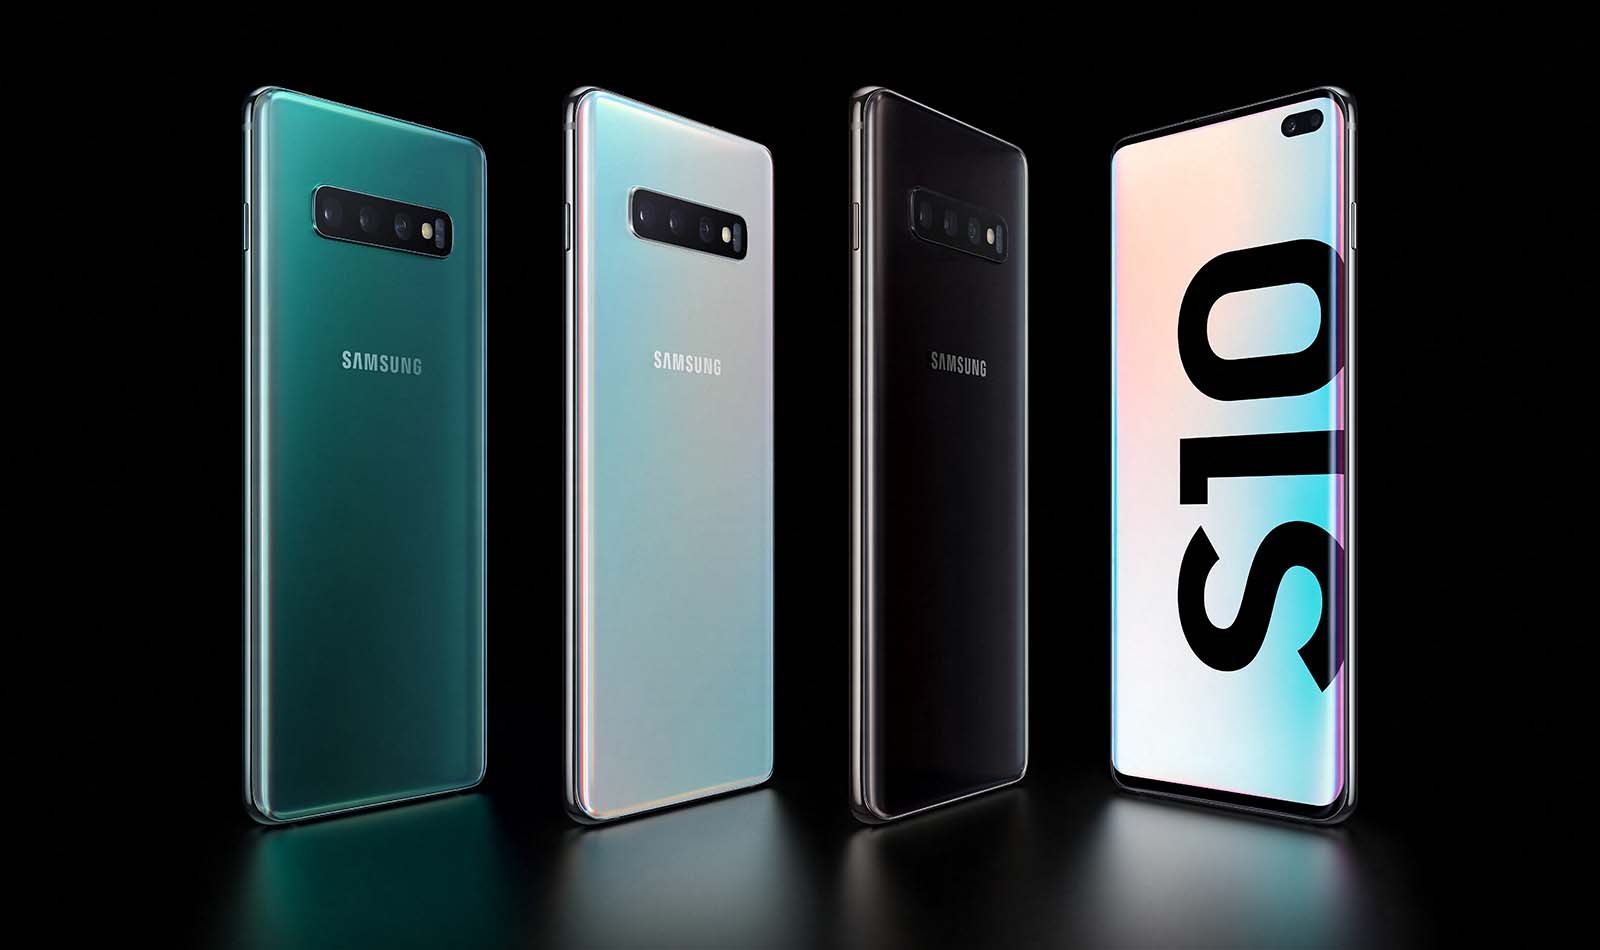 Samsung Presenta Sus Más Potentes Smartphones Los Galaxy S10 El